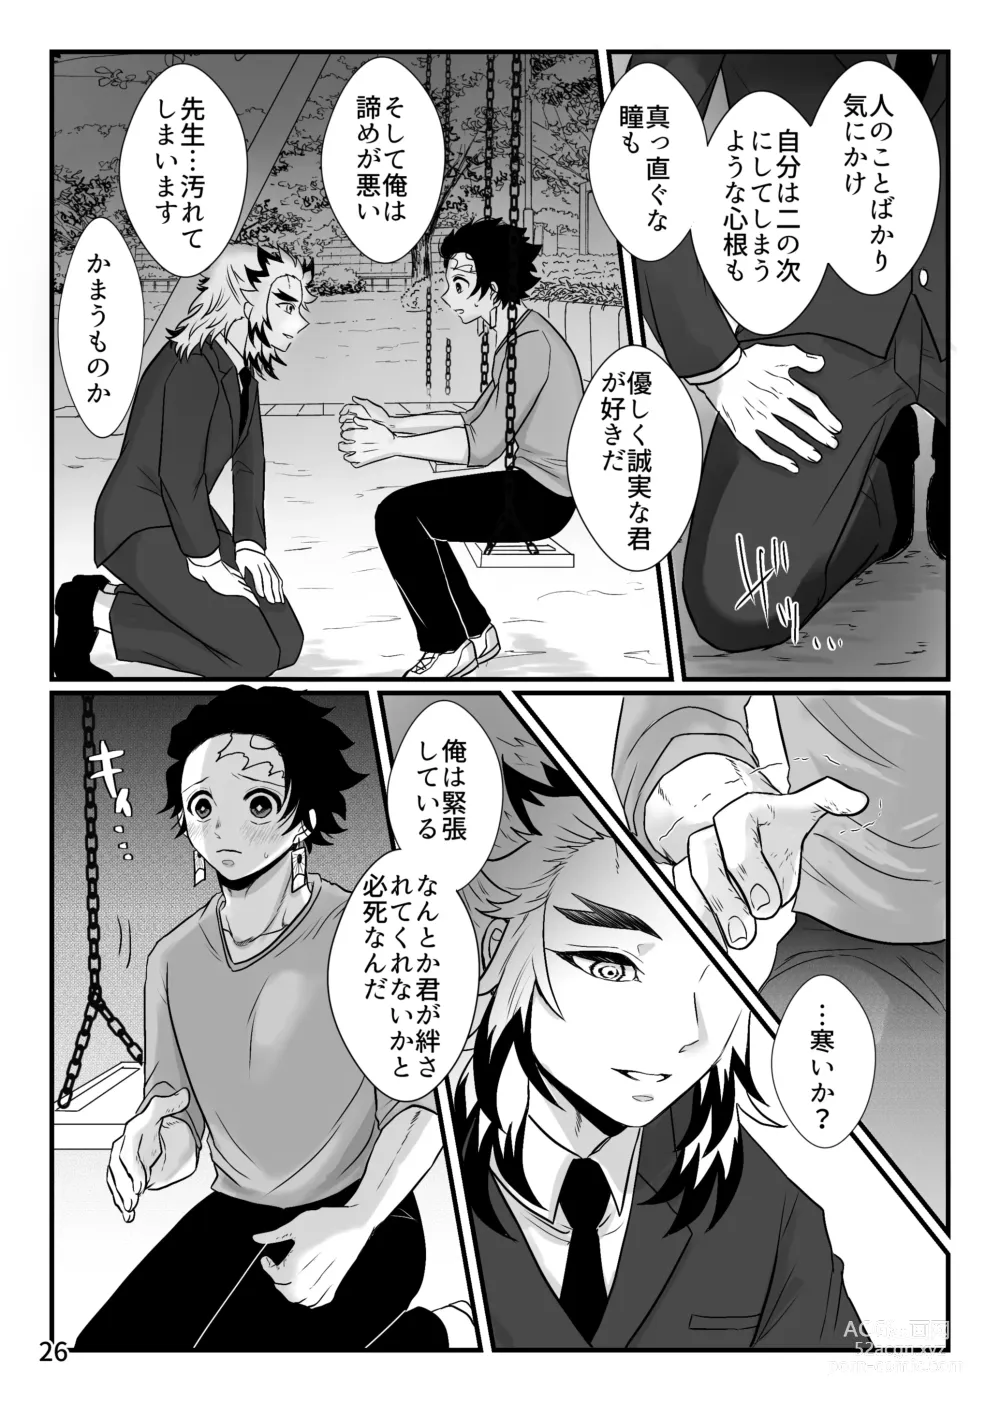 Page 26 of doujinshi Kono Gekijou o Shirazu ni